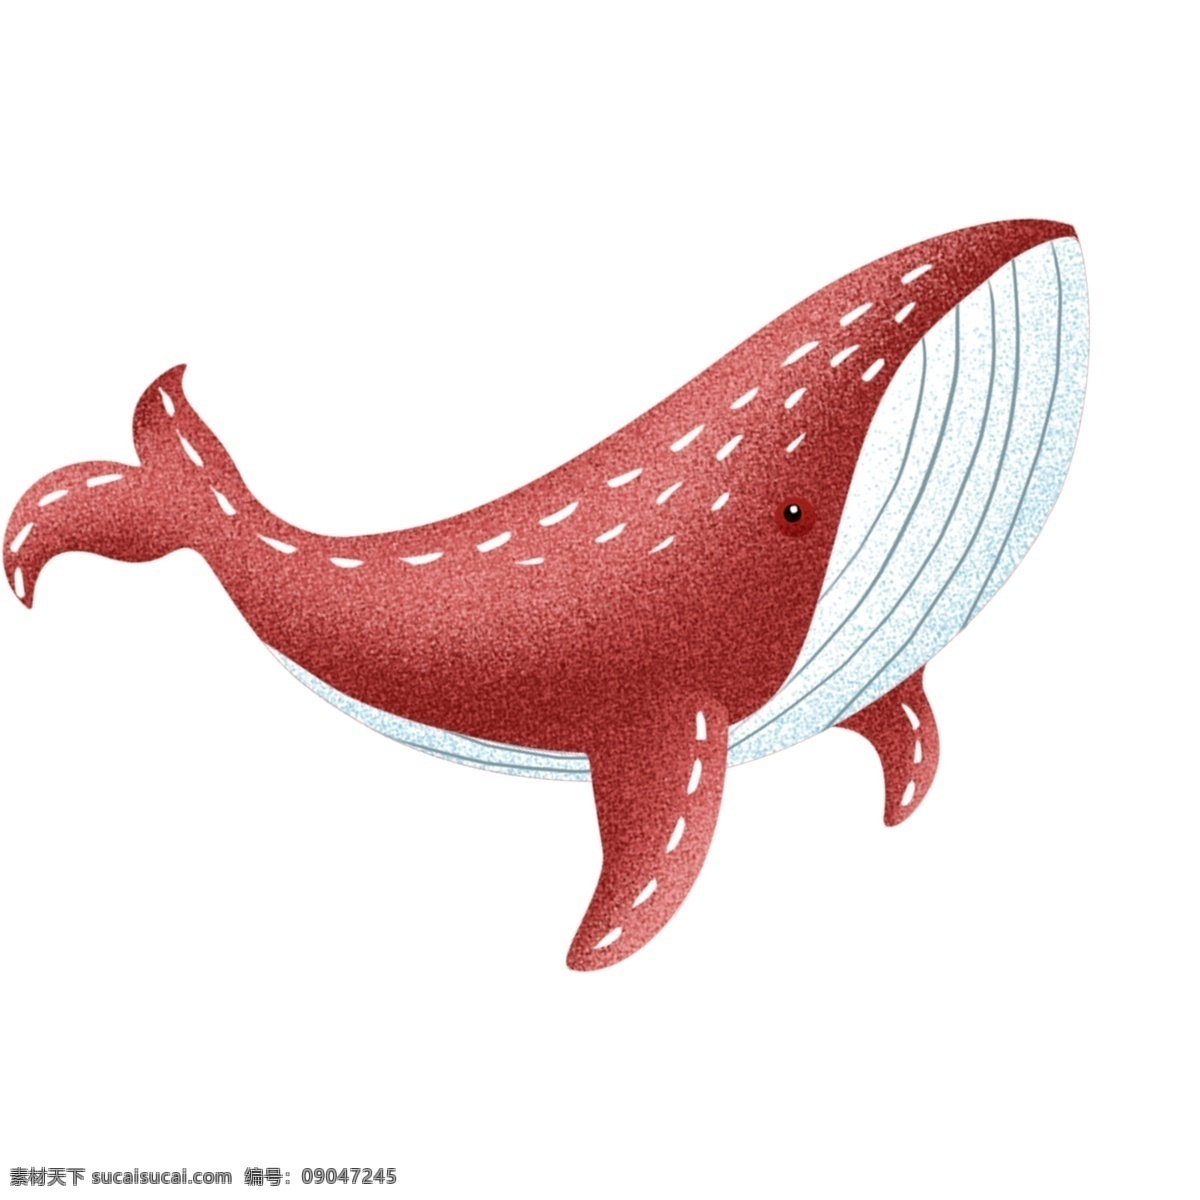 复古 肌理 一头 鲸鱼 卡通 复古肌理 手绘 海洋生物 插画 治愈系